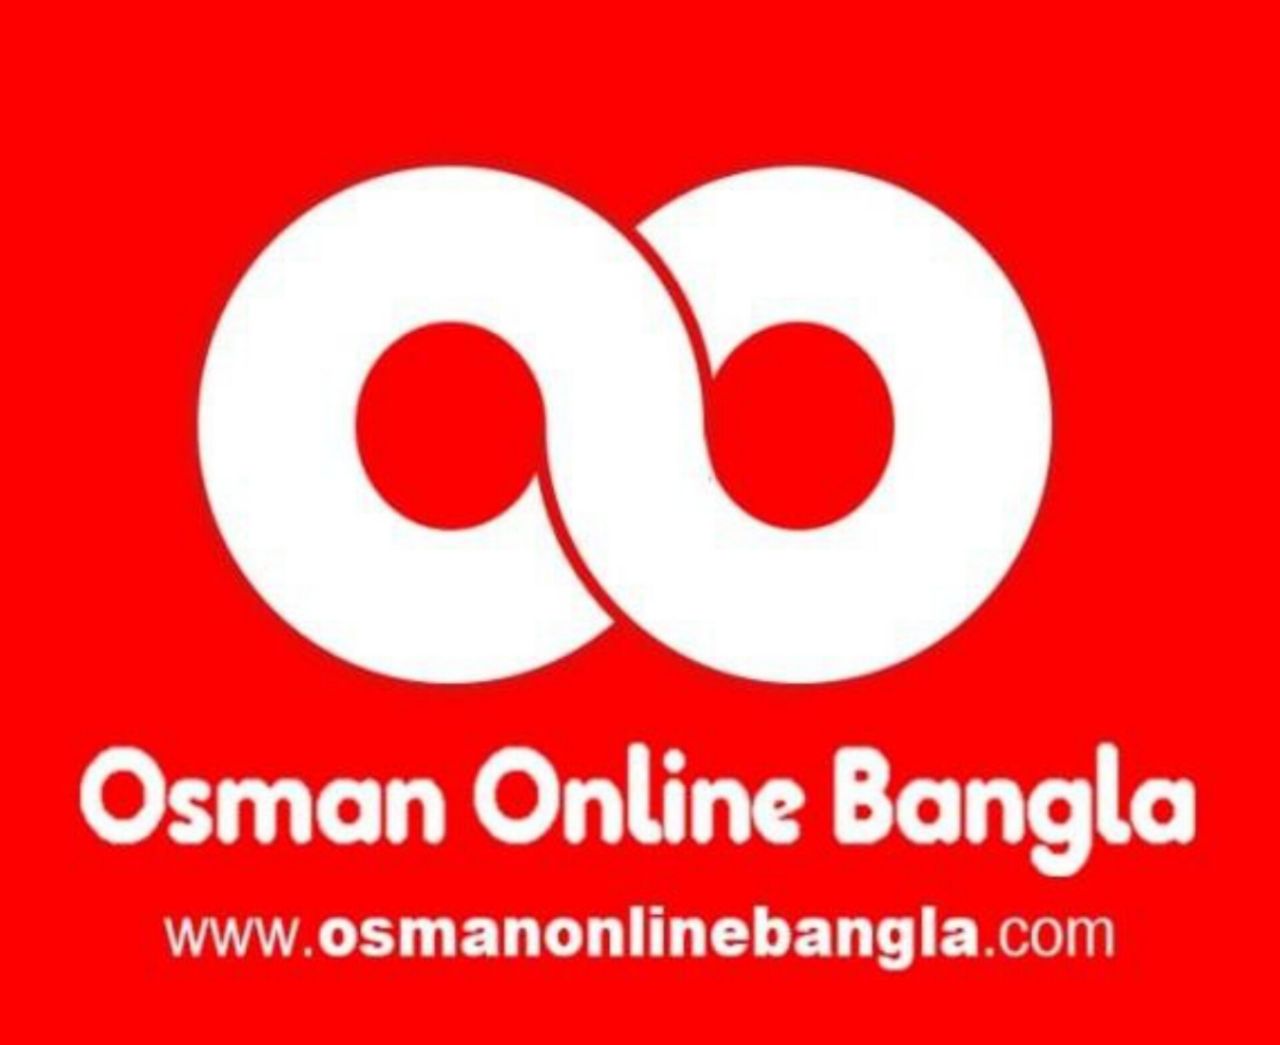 OsmanOnline Bangla